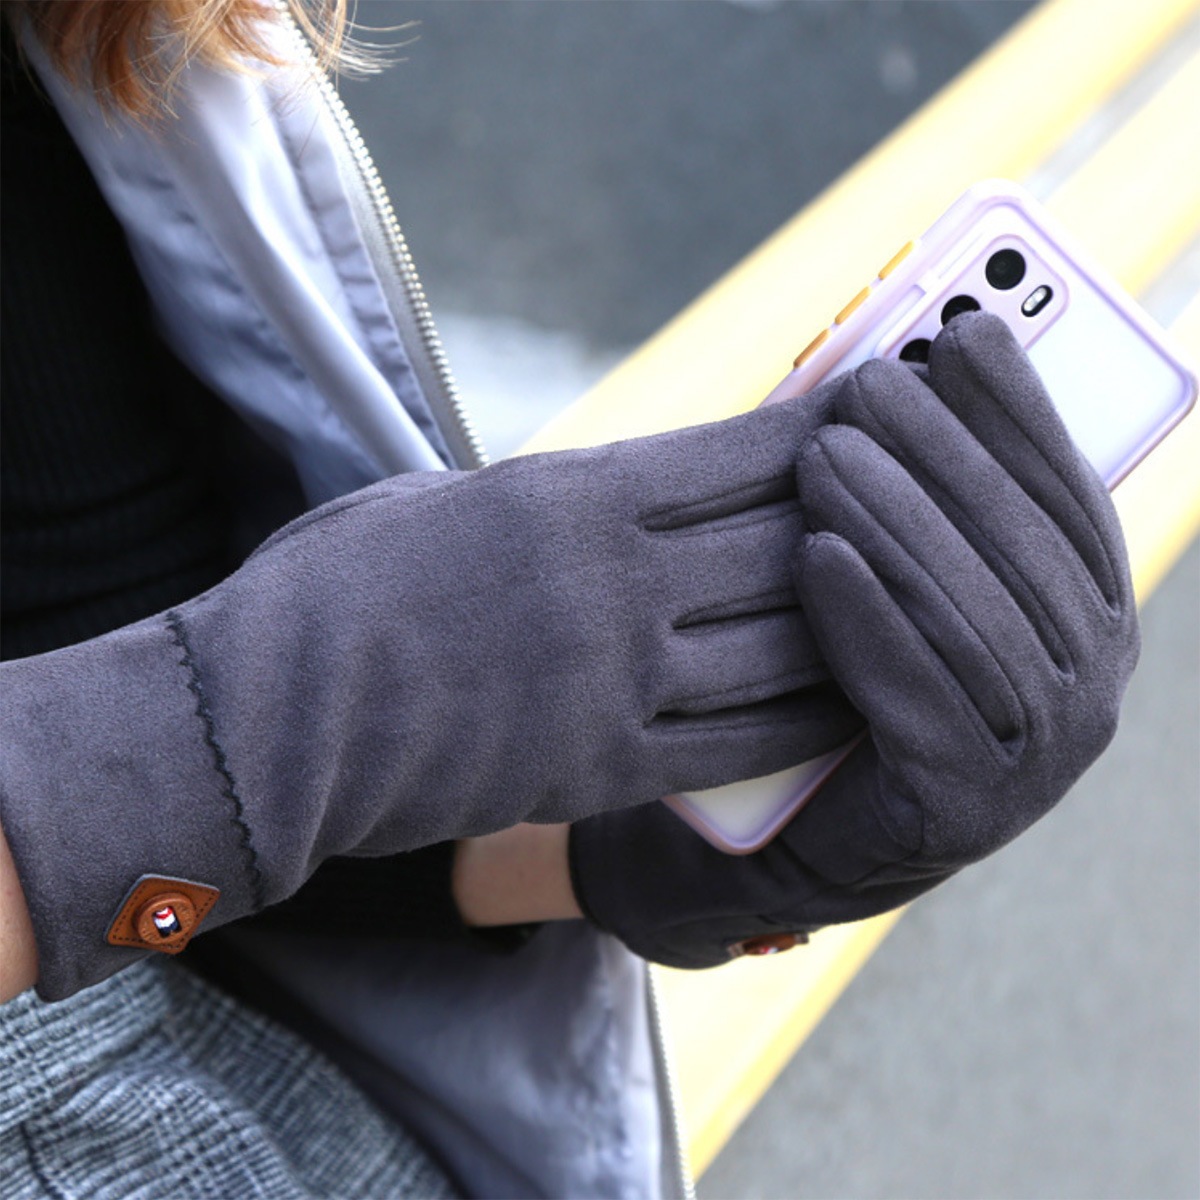 レディース スマホ手袋 Jphbk 01 スマートフォン対応手袋 手袋 グローブ 上質で快適 暖かい 防寒 冬用